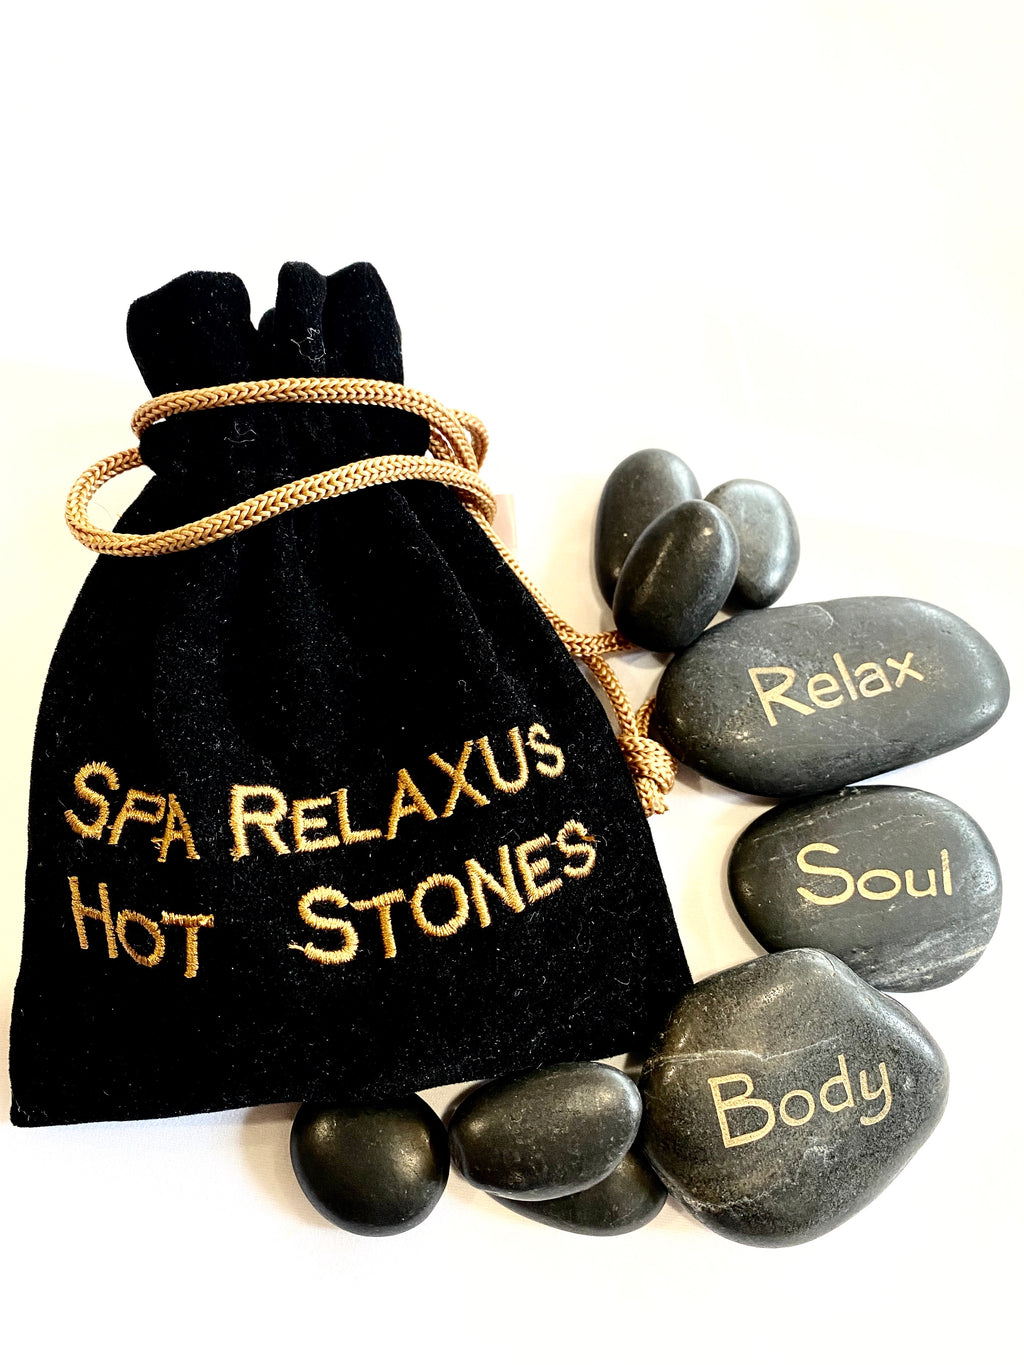 Spa Relaxus Hot Stones - Lighten Up Shop